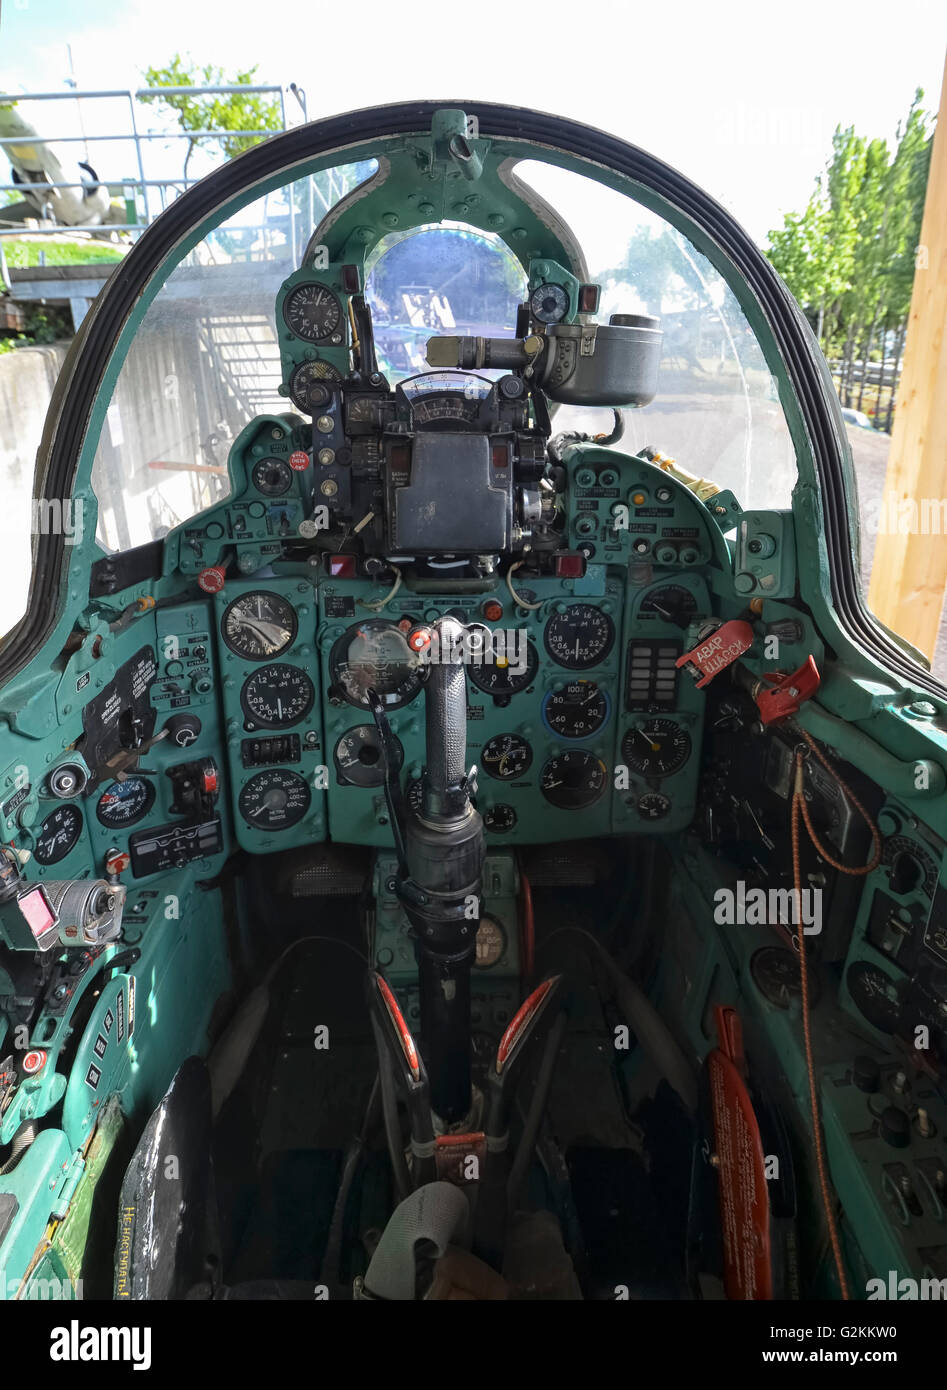 Das Cockpit der Mig-21-Kampfjet Stockfotografie - Alamy